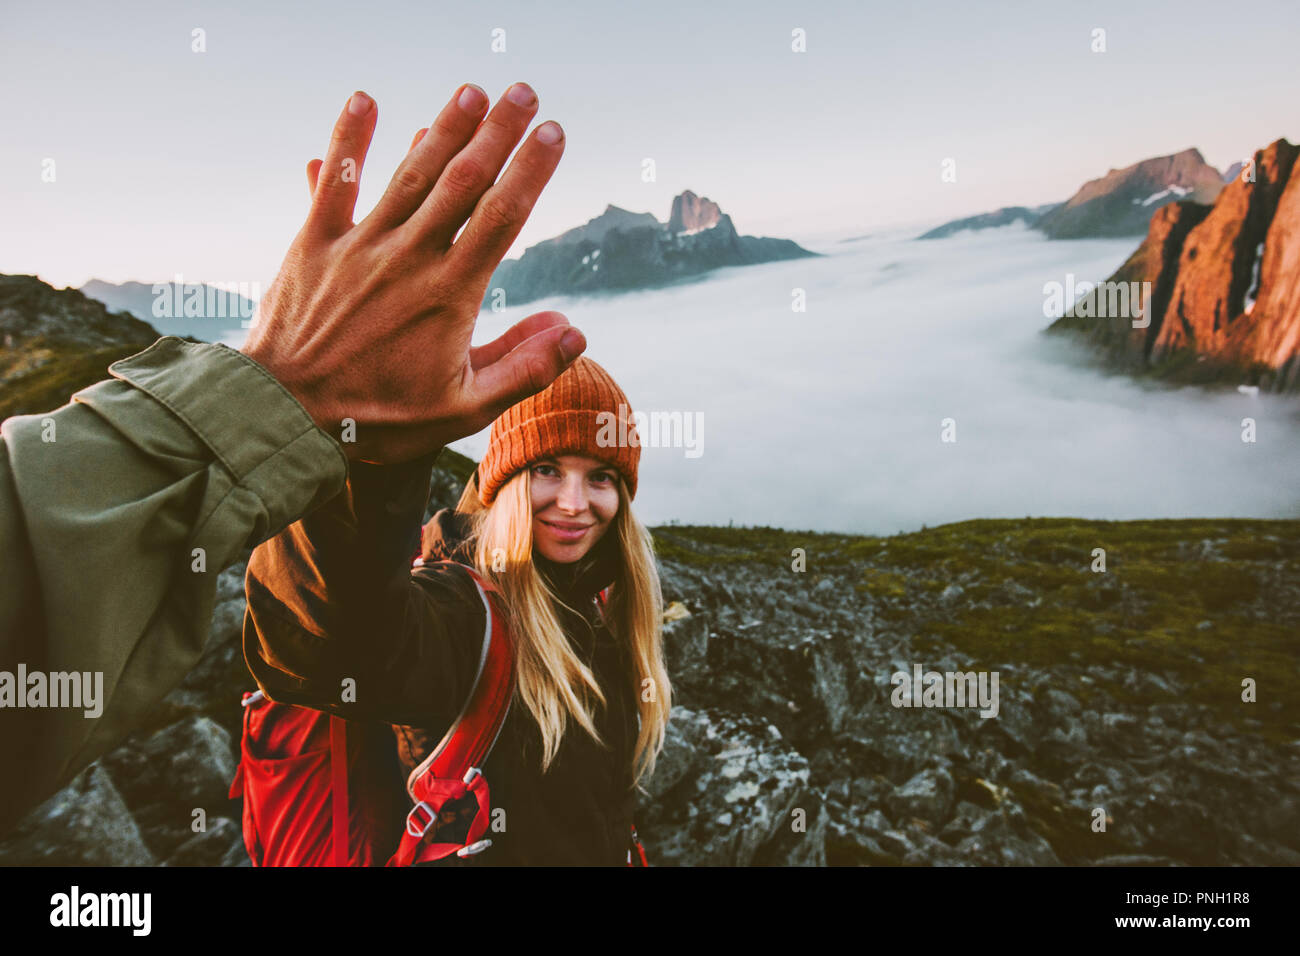 Reisen paar Freunde geben fünf Hände outdoor Wandern in den Bergen Abenteuer lifestyle positive Emotionen Konzept Familie zusammen auf Reise Ferien Stockfoto